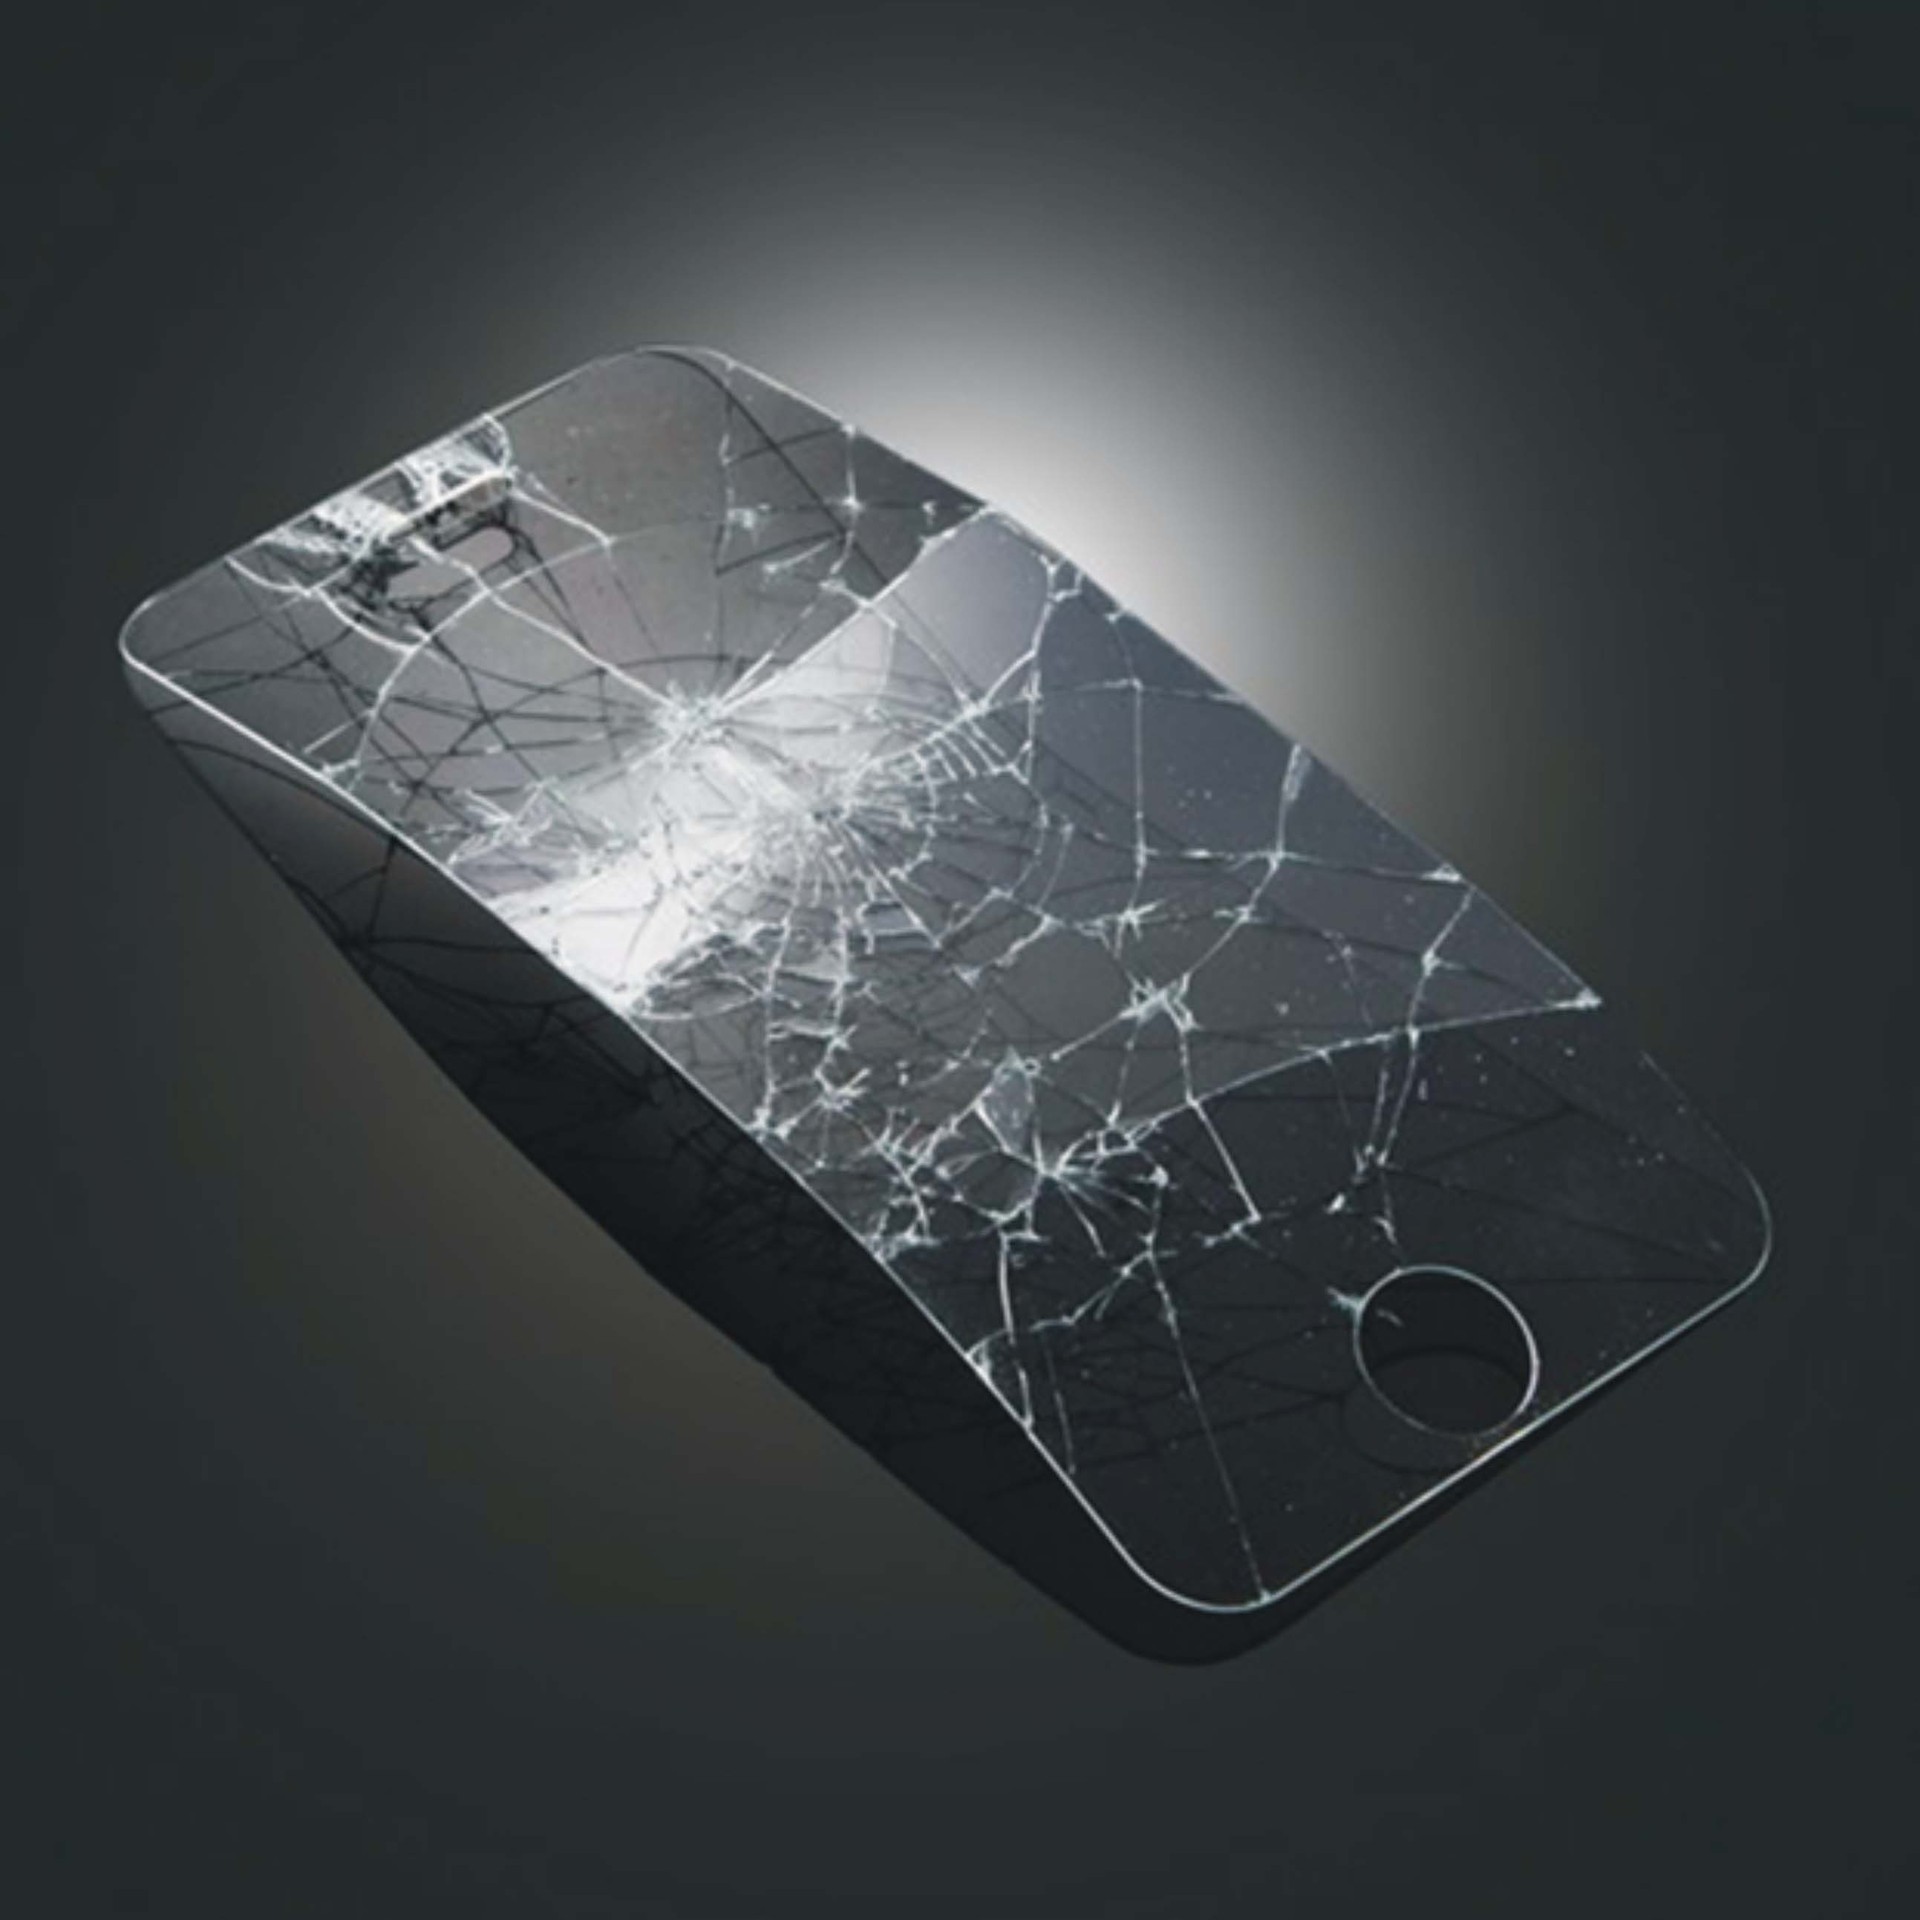 苹果iphone5/4s手机屏幕专用钢化玻璃膜 防爆膜 透明防指纹贴膜